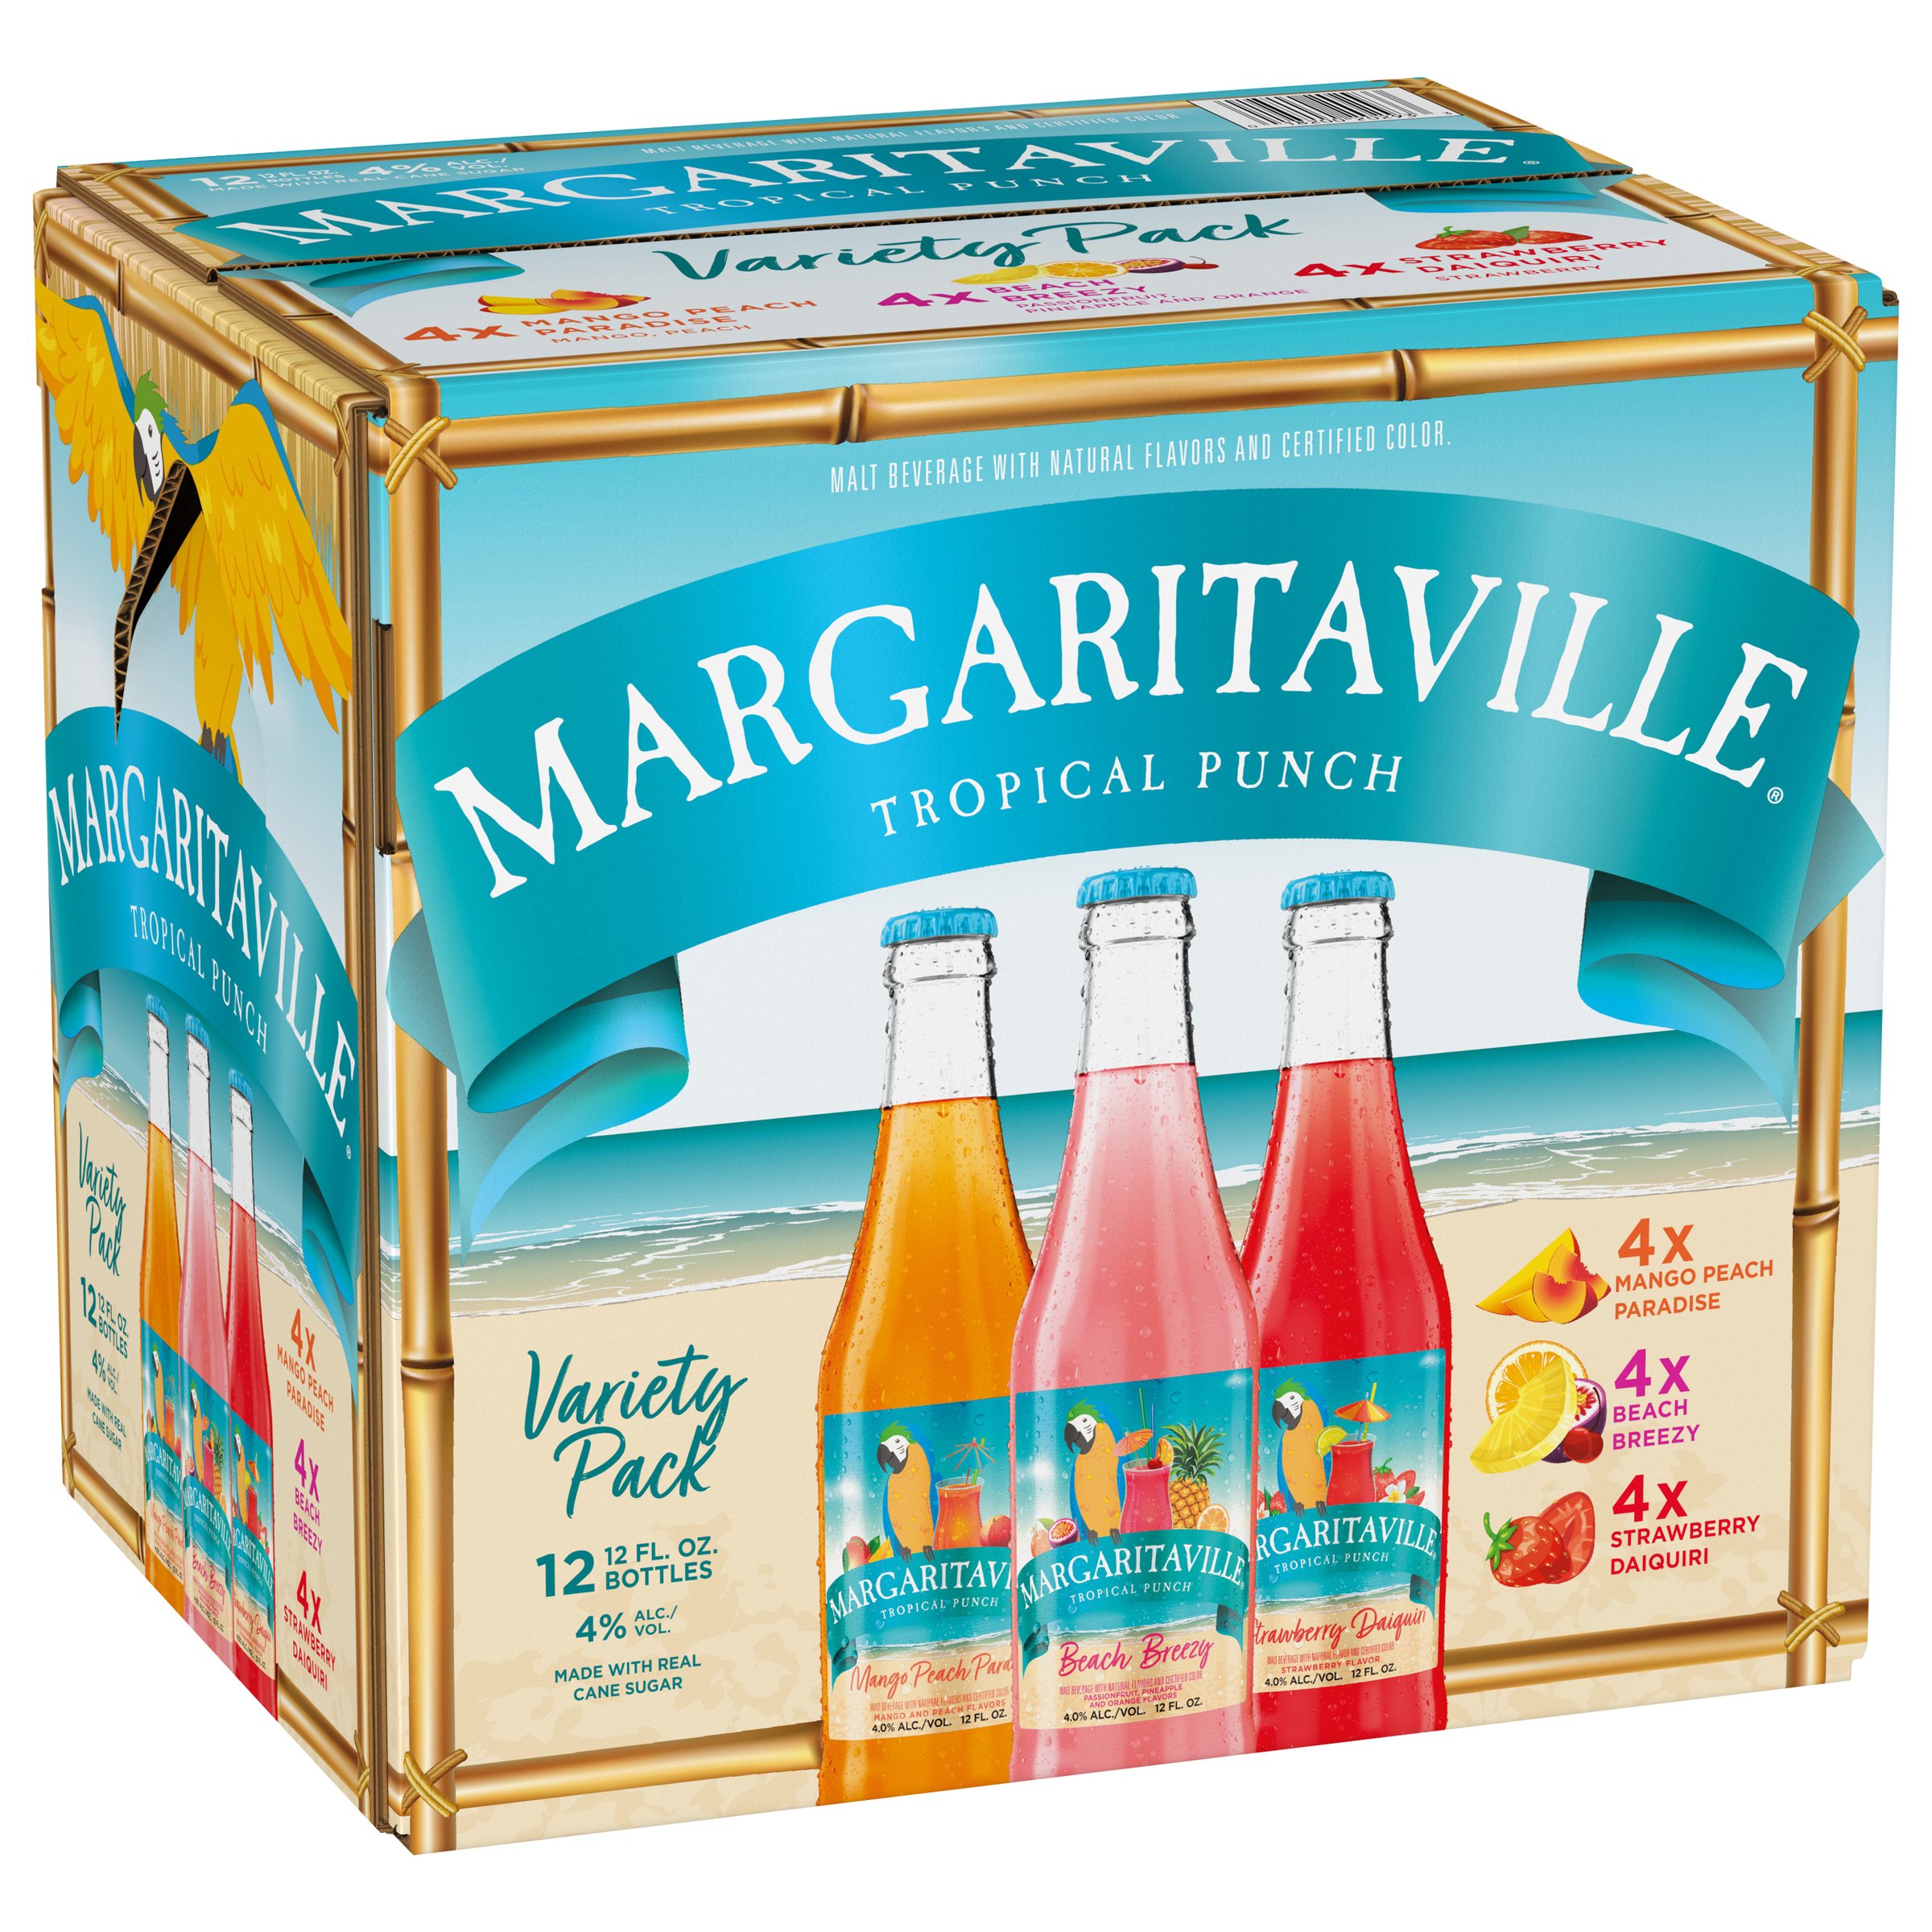 Margaritaville Tropical Punch Variety Pack 12 Oz Bottles Shop Malt Beverages And Coolers At H E B